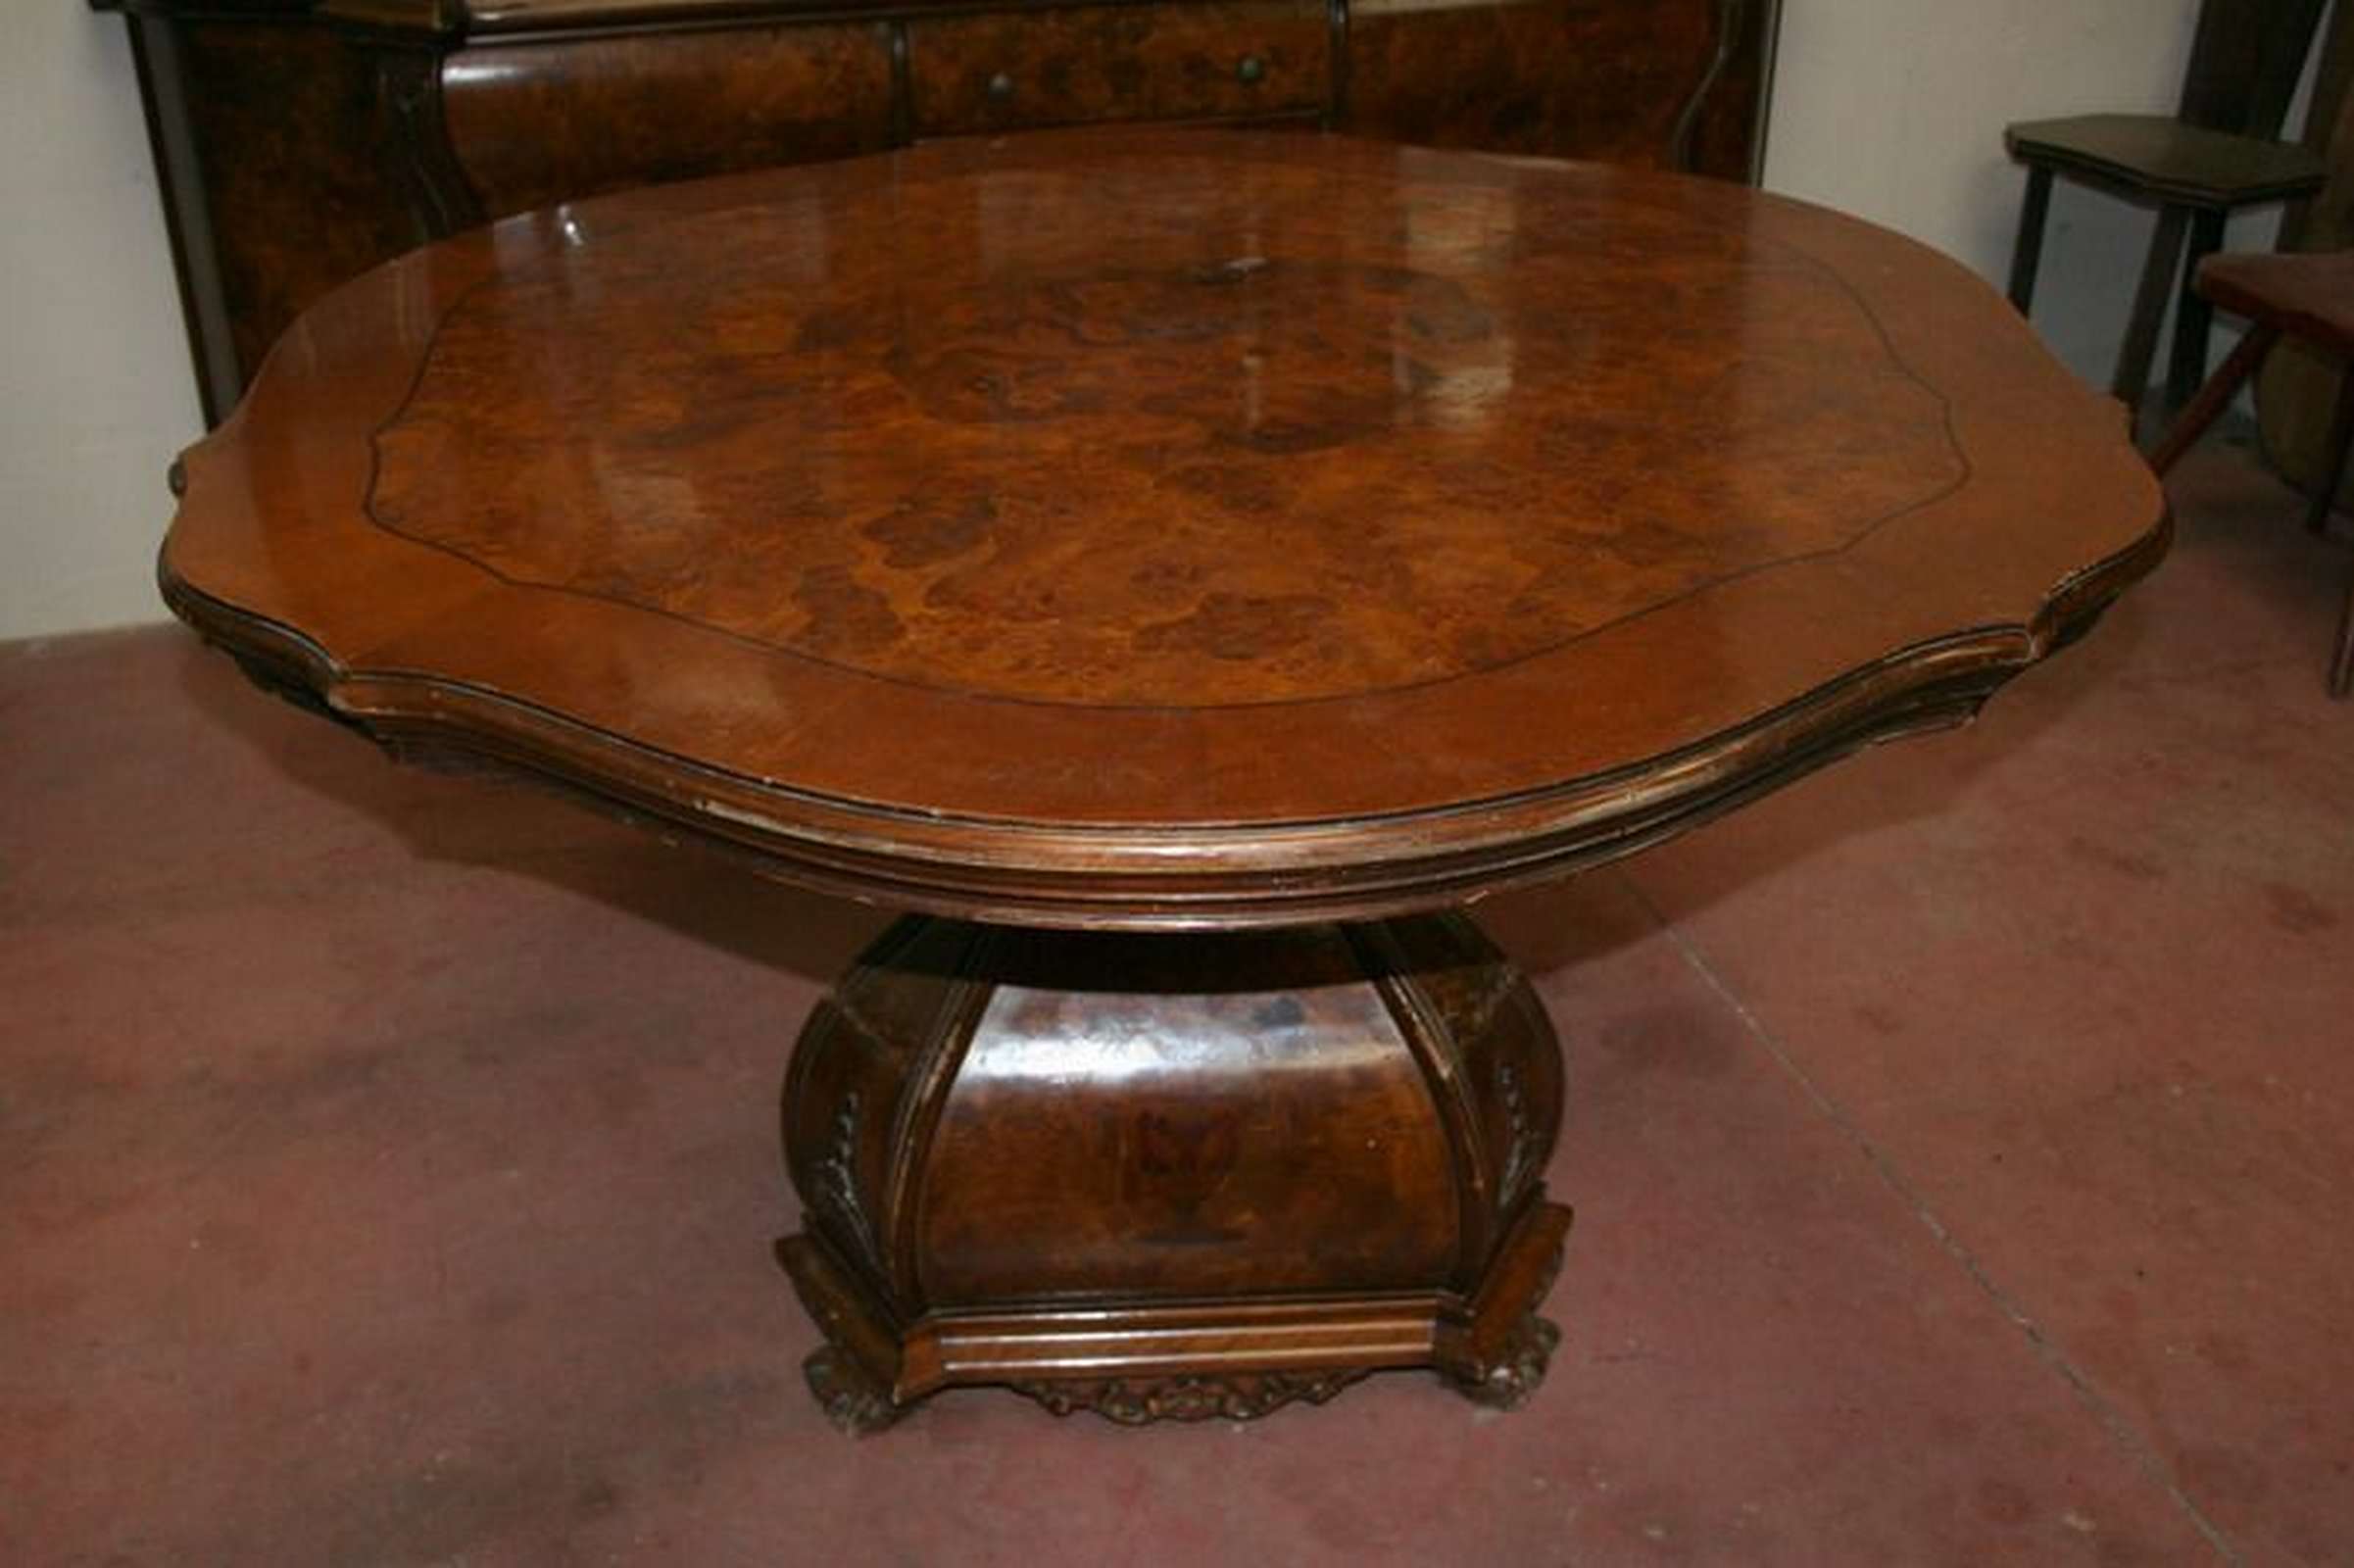 Antico tavolo in legno. Epoca fine 1800. - Tavoli in legno - Tavoli e complementi - Prodotti - Antichità Fiorillo